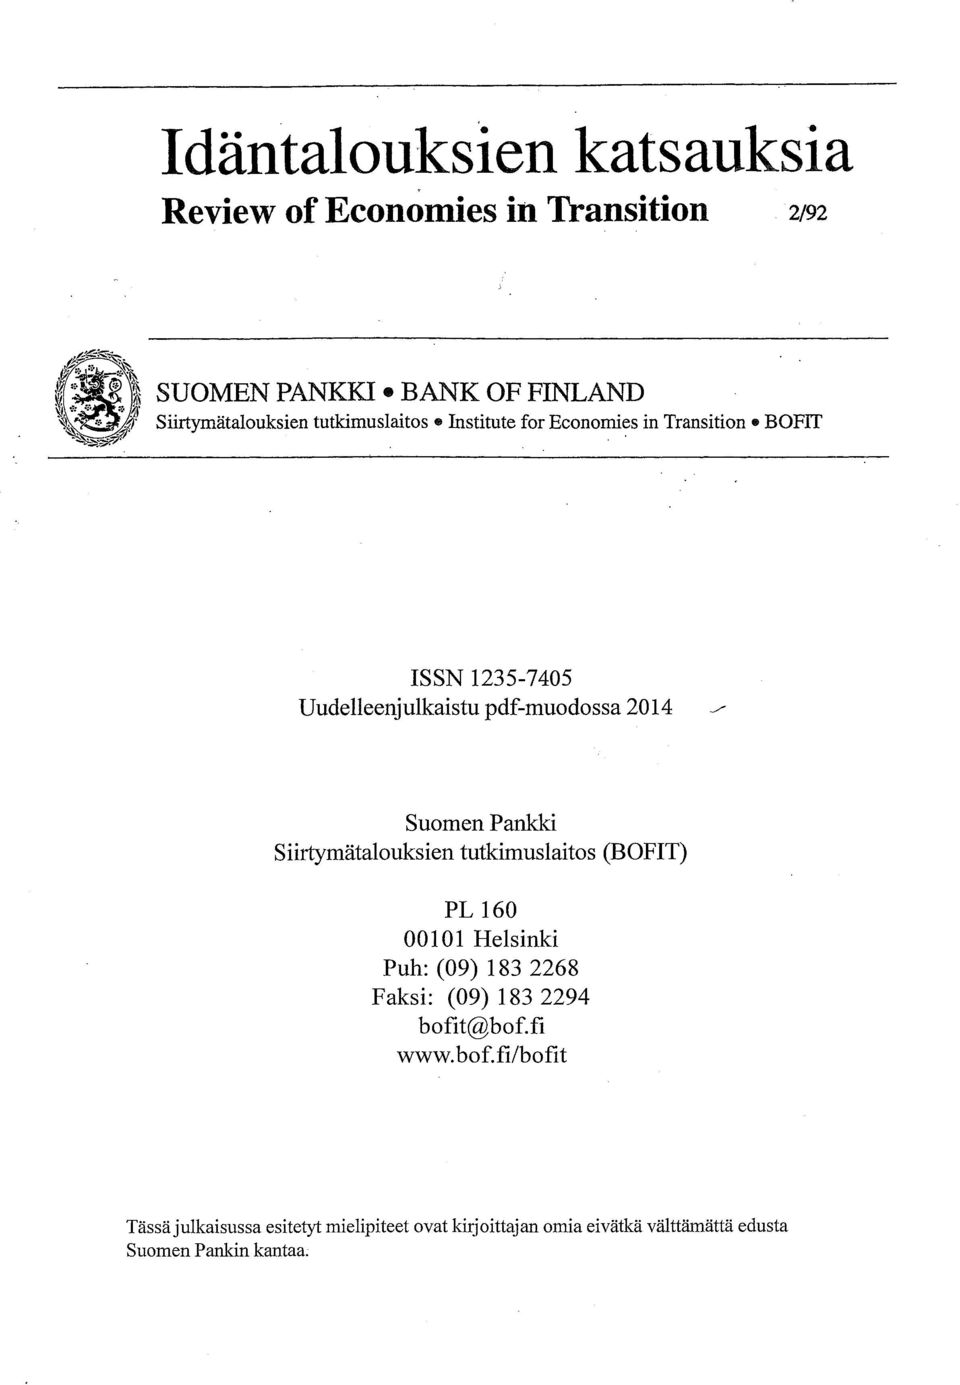 / Suomen Pankki Siirtymätalouksien tutkimuslaitos (BOFT) PL 160 00101 Helsinki Puh: (09) 183 2268 Faksi: (09) 183 2294